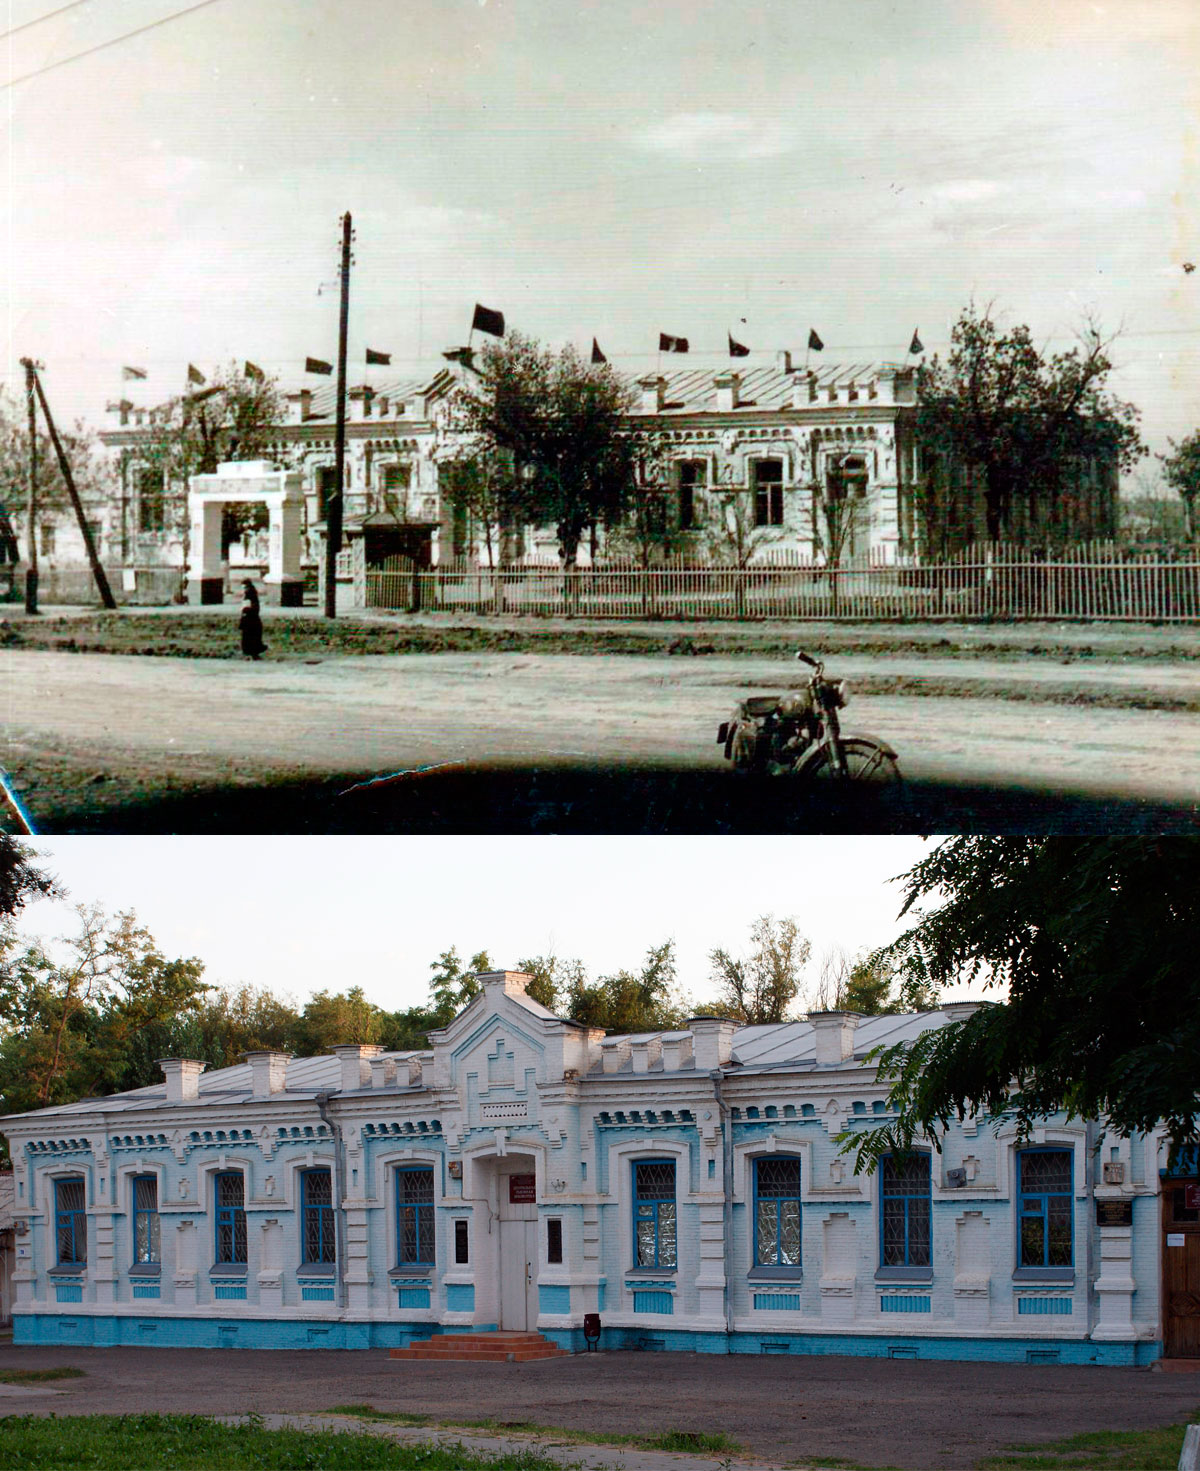 Два снимка одного здания – межпоселенческой центральной библиотеки.  Их разделяют многие годы. Но и по сей день не ослабевает интерес к нему